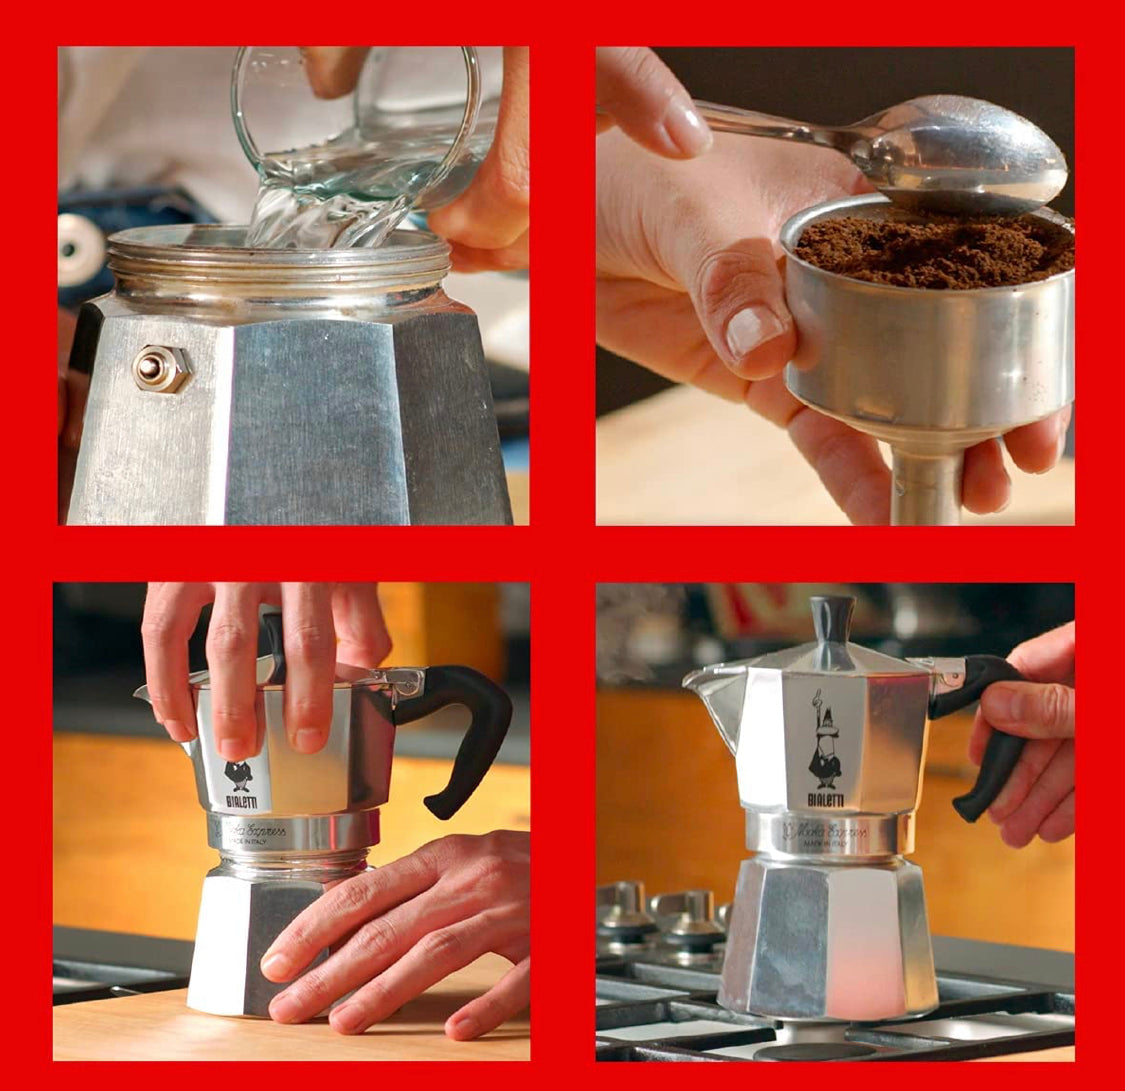 Bialetti 3 Cup Moka Stovetop Espresso Maker - Silver